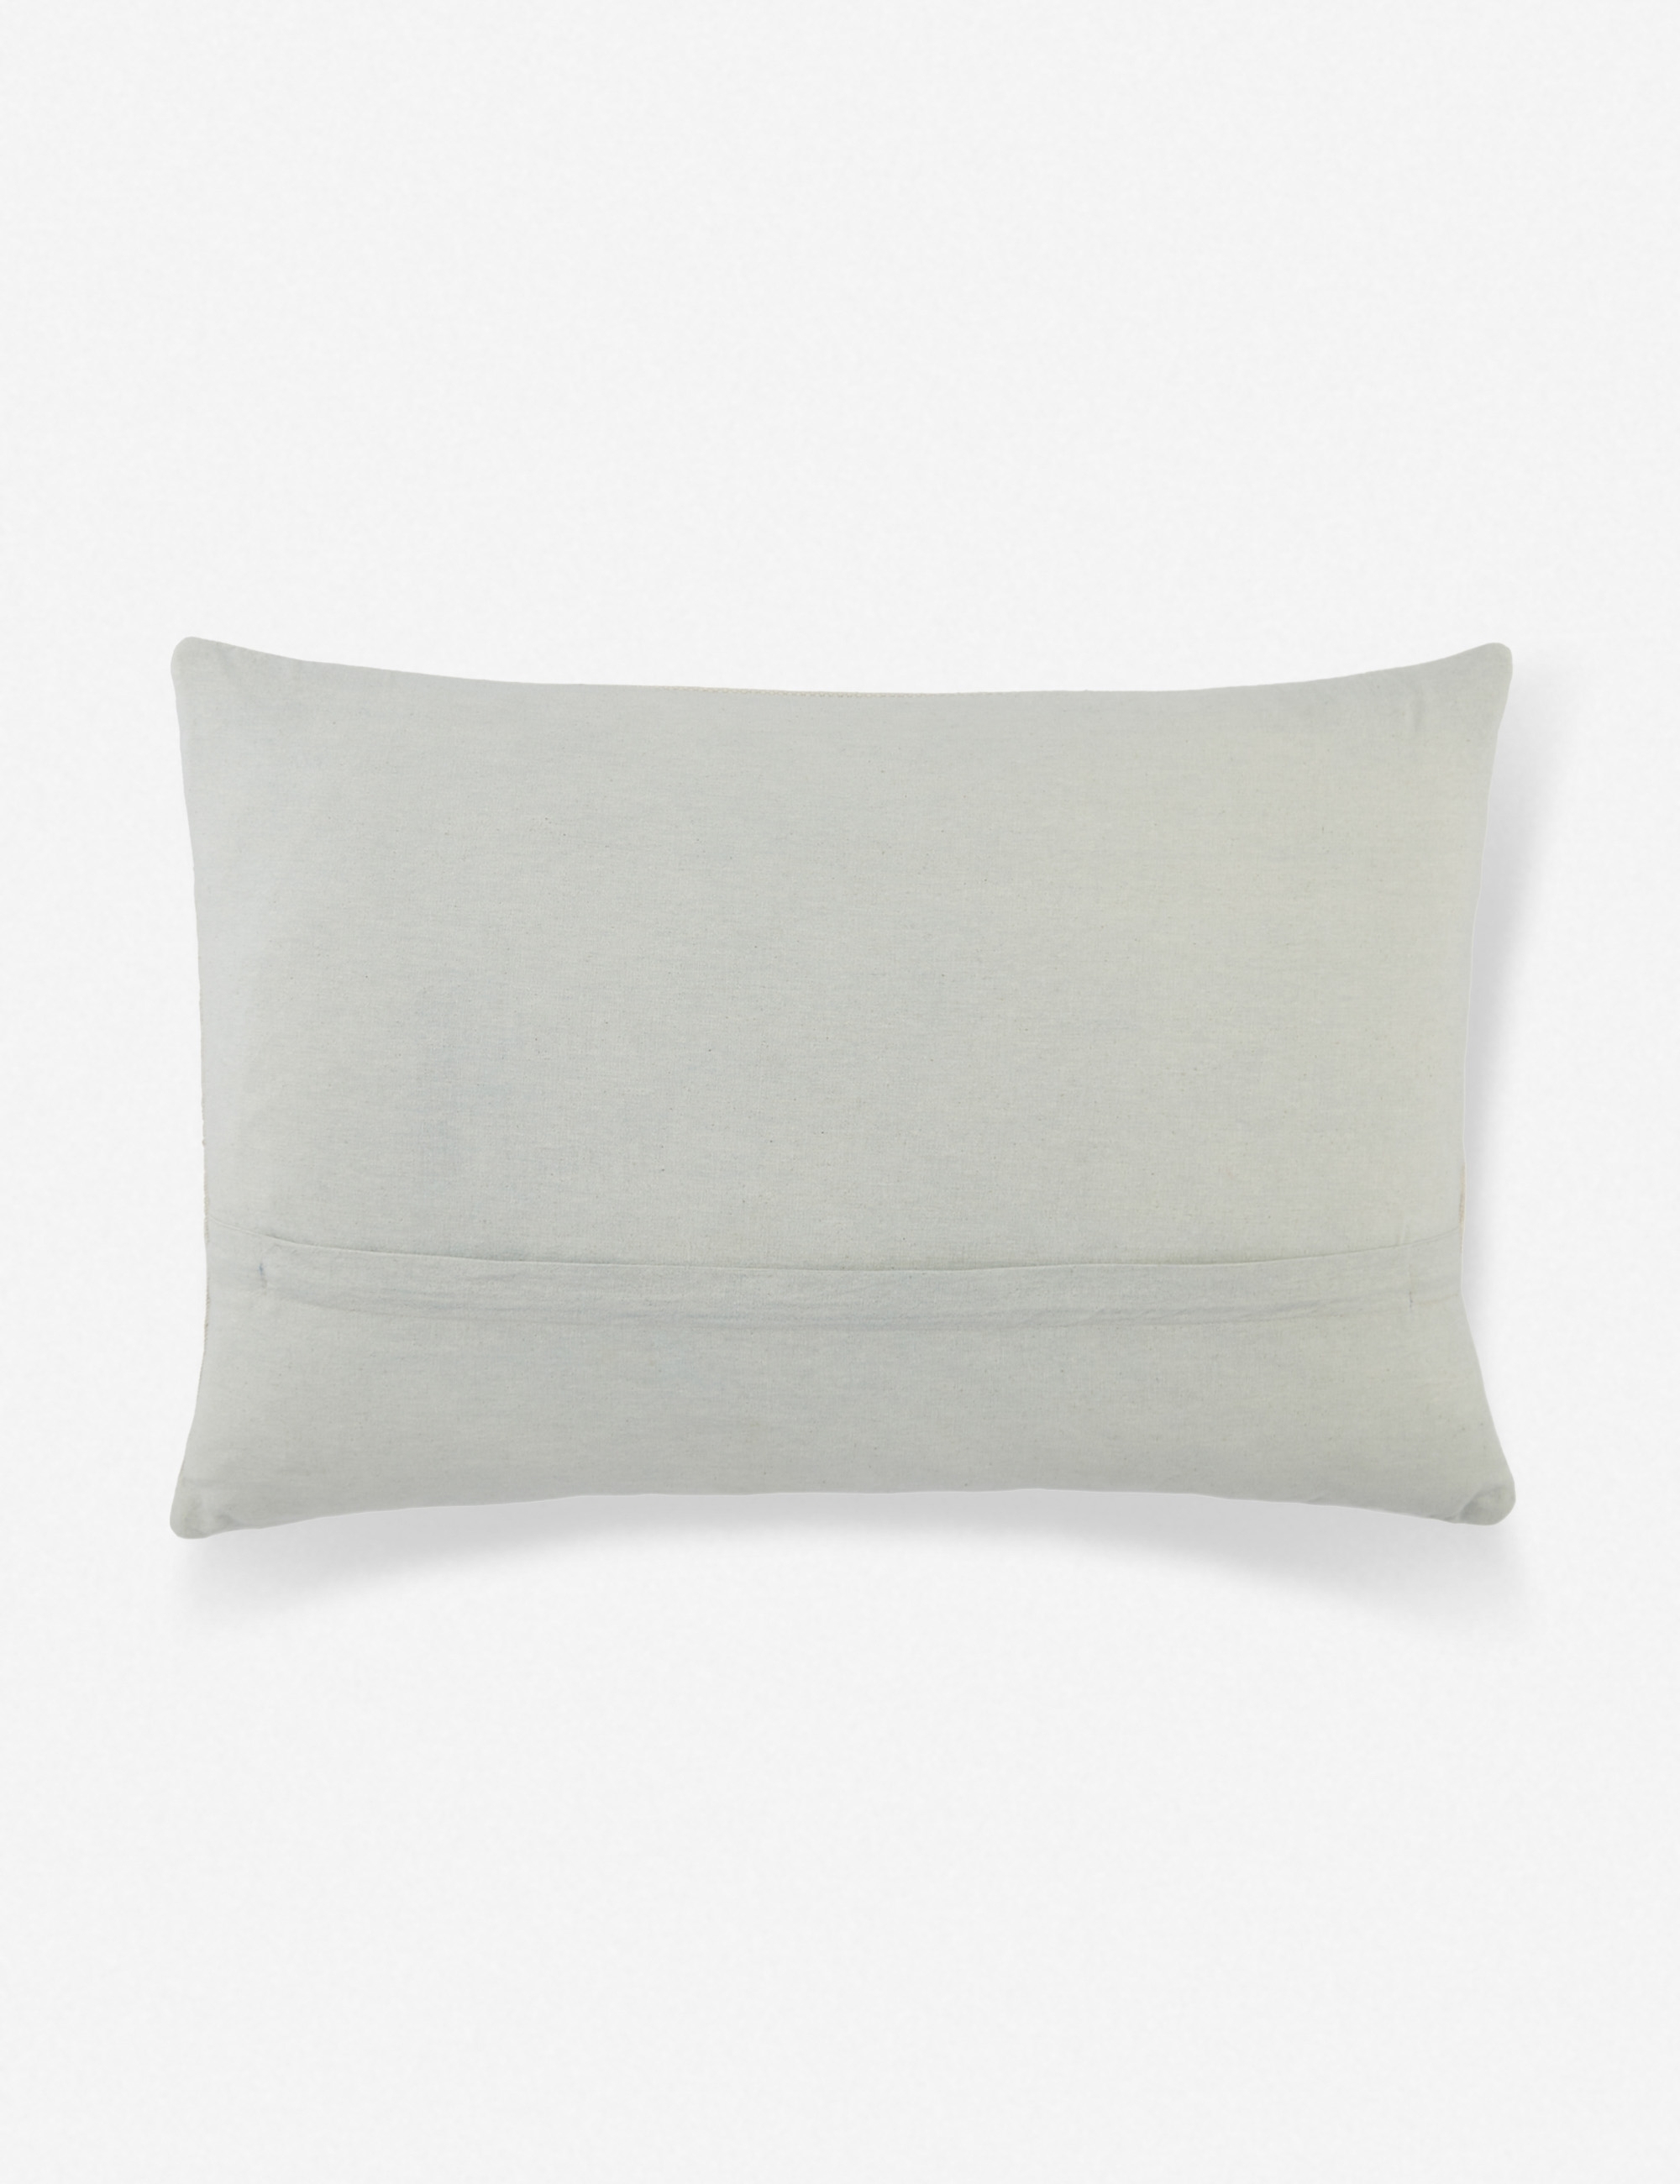 Lina Lumbar Pillow, Light Gray 24" x 16" - Image 1